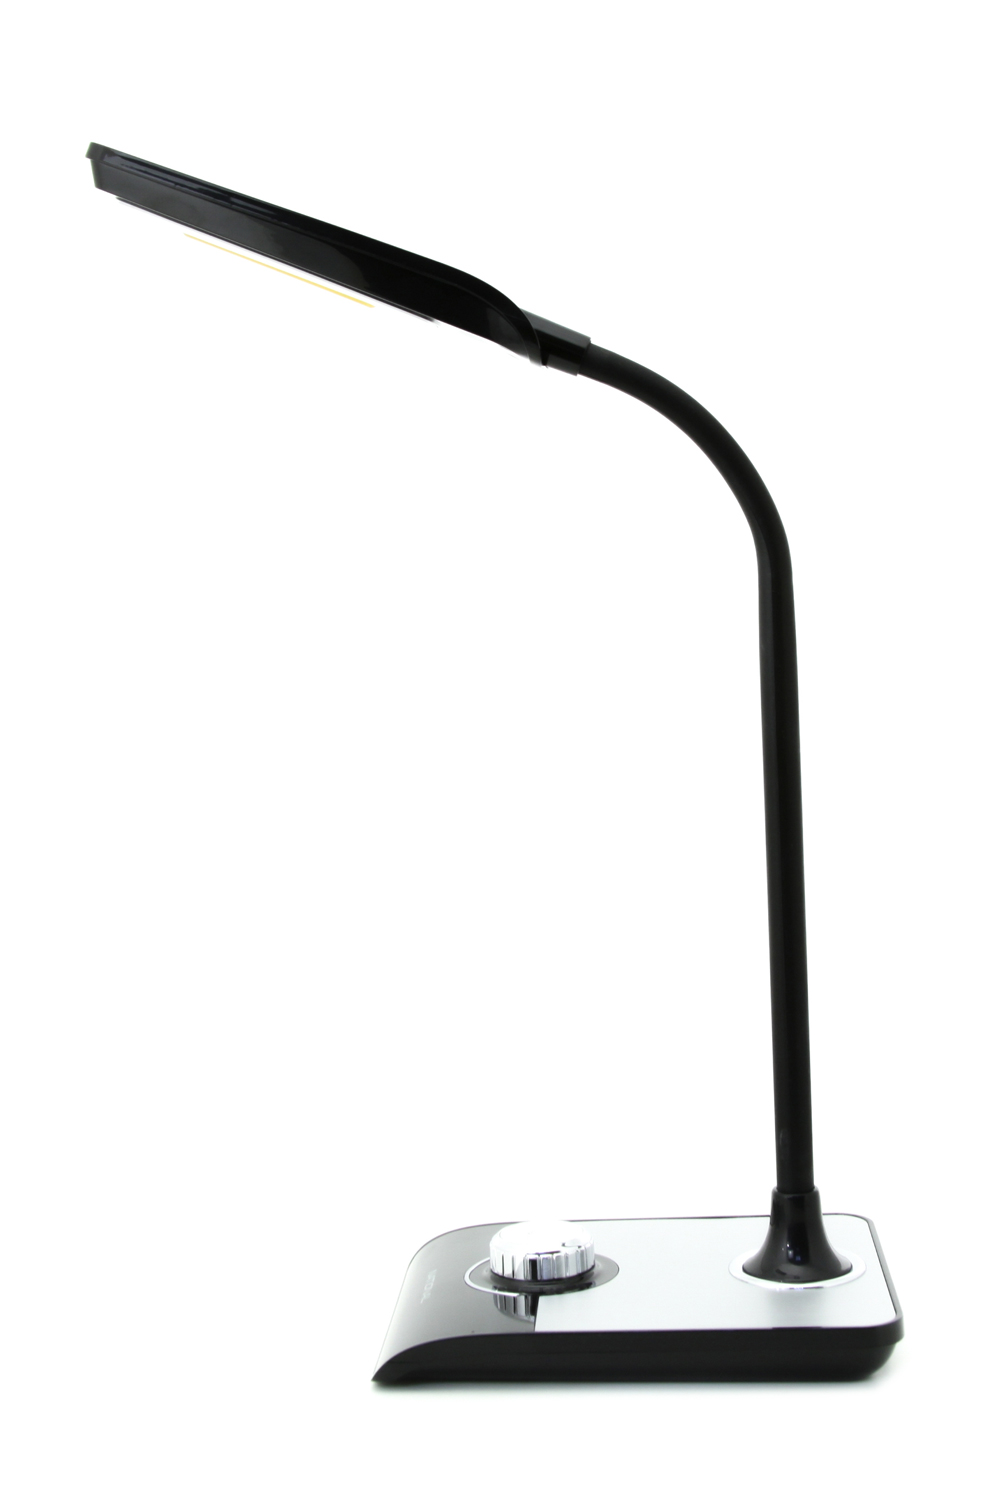 Картинка Настольная лампа светодиодная NATIONAL NL-67LED по разумной цене купить в интернет магазине mall.su